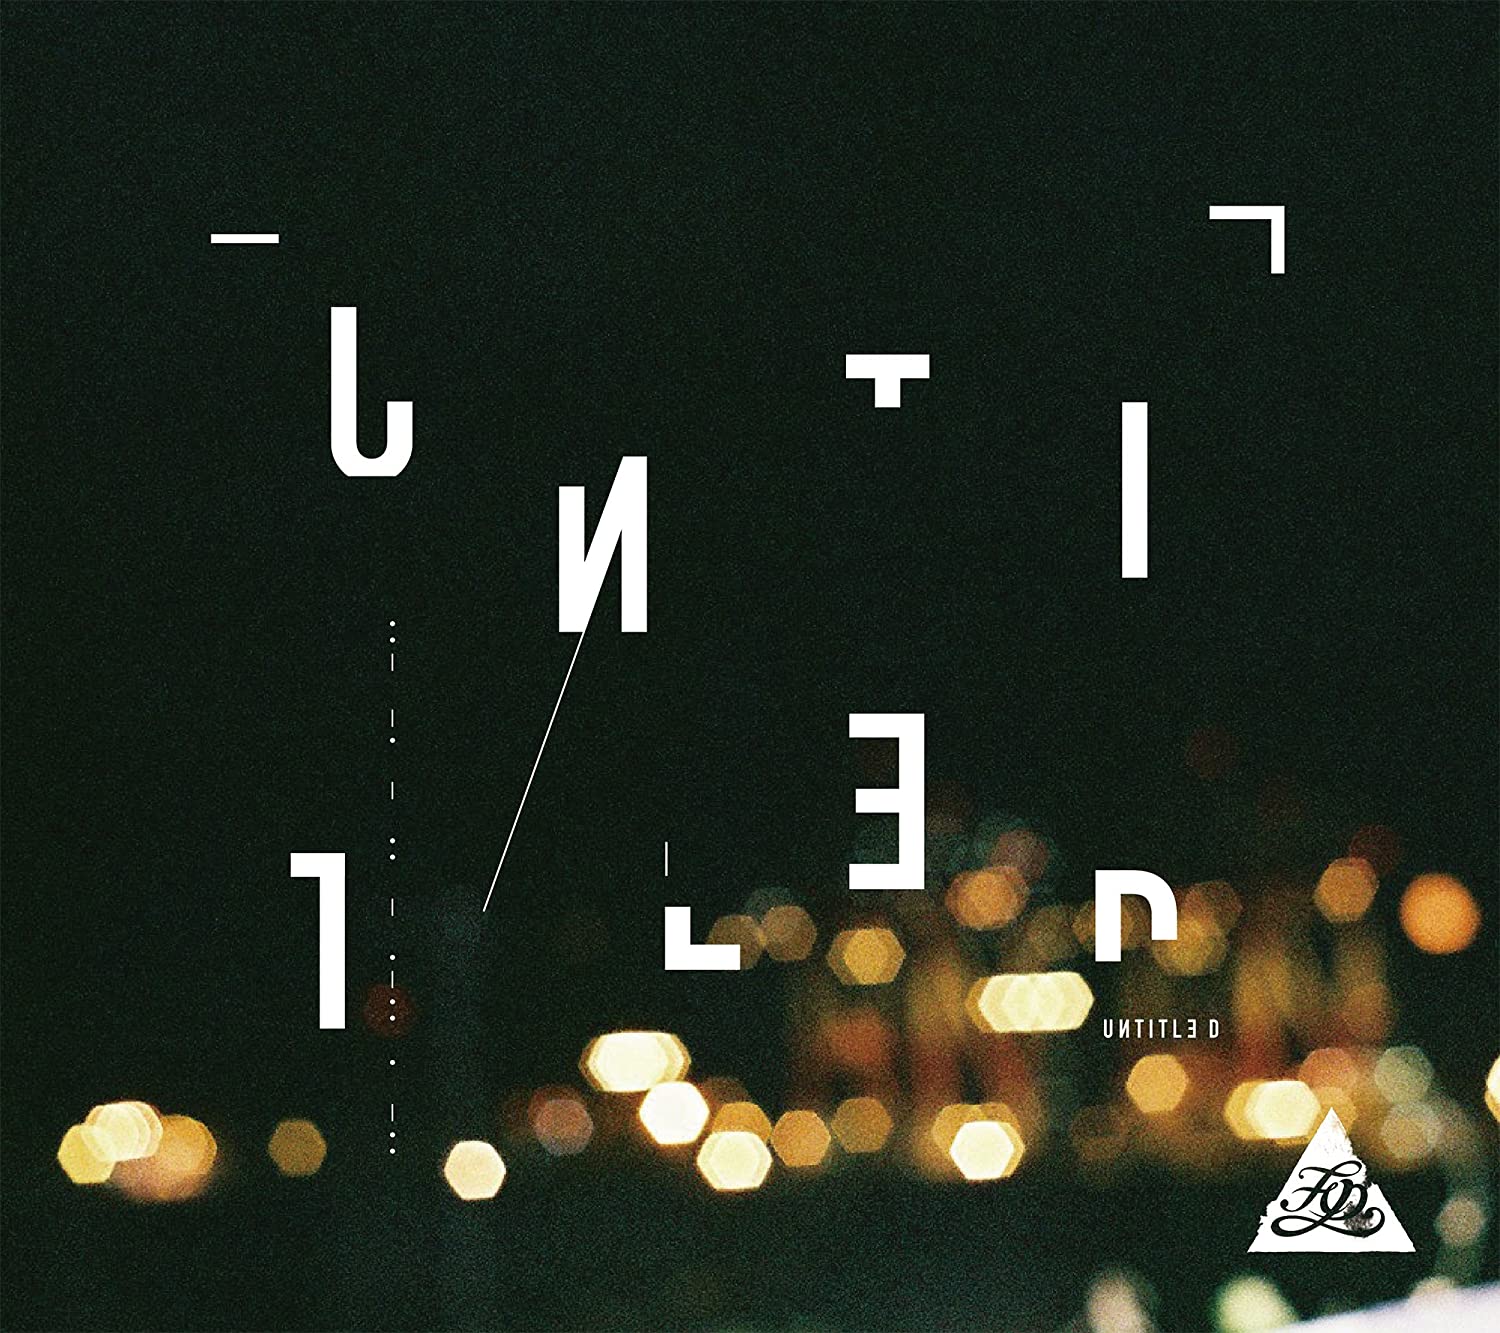 Cross View 这首歌曲收录于2017年10月发布的“UNTITLED”中（图片来源：网络图片）